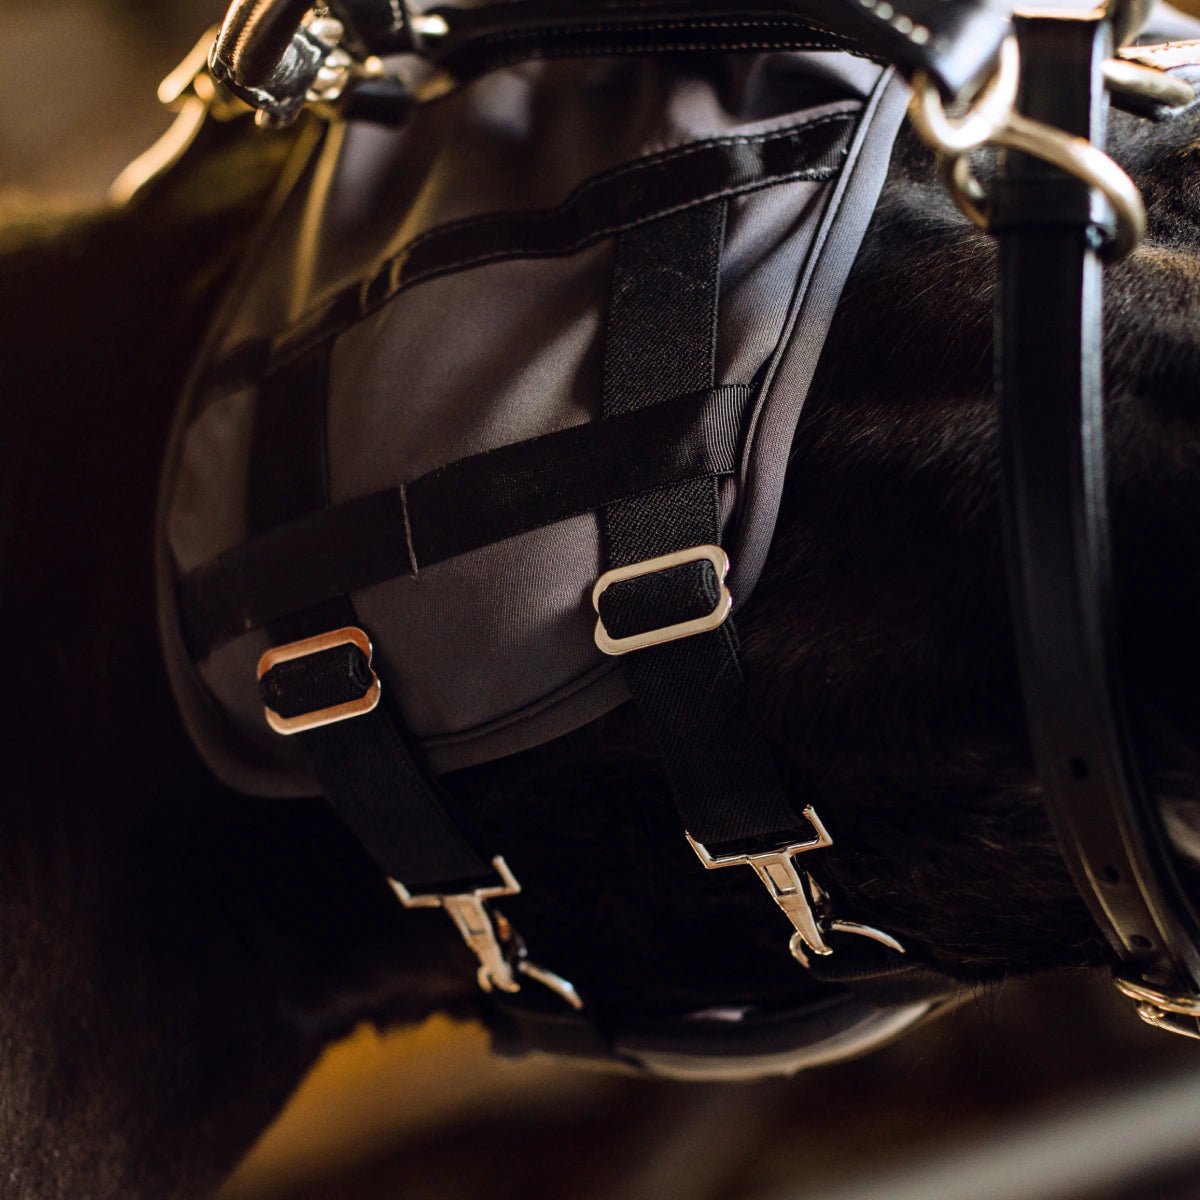 HENRY equestrian - Fenwick - Μάσκα από υγρό τιτάνιο χωρίς αυτιά μαύρο